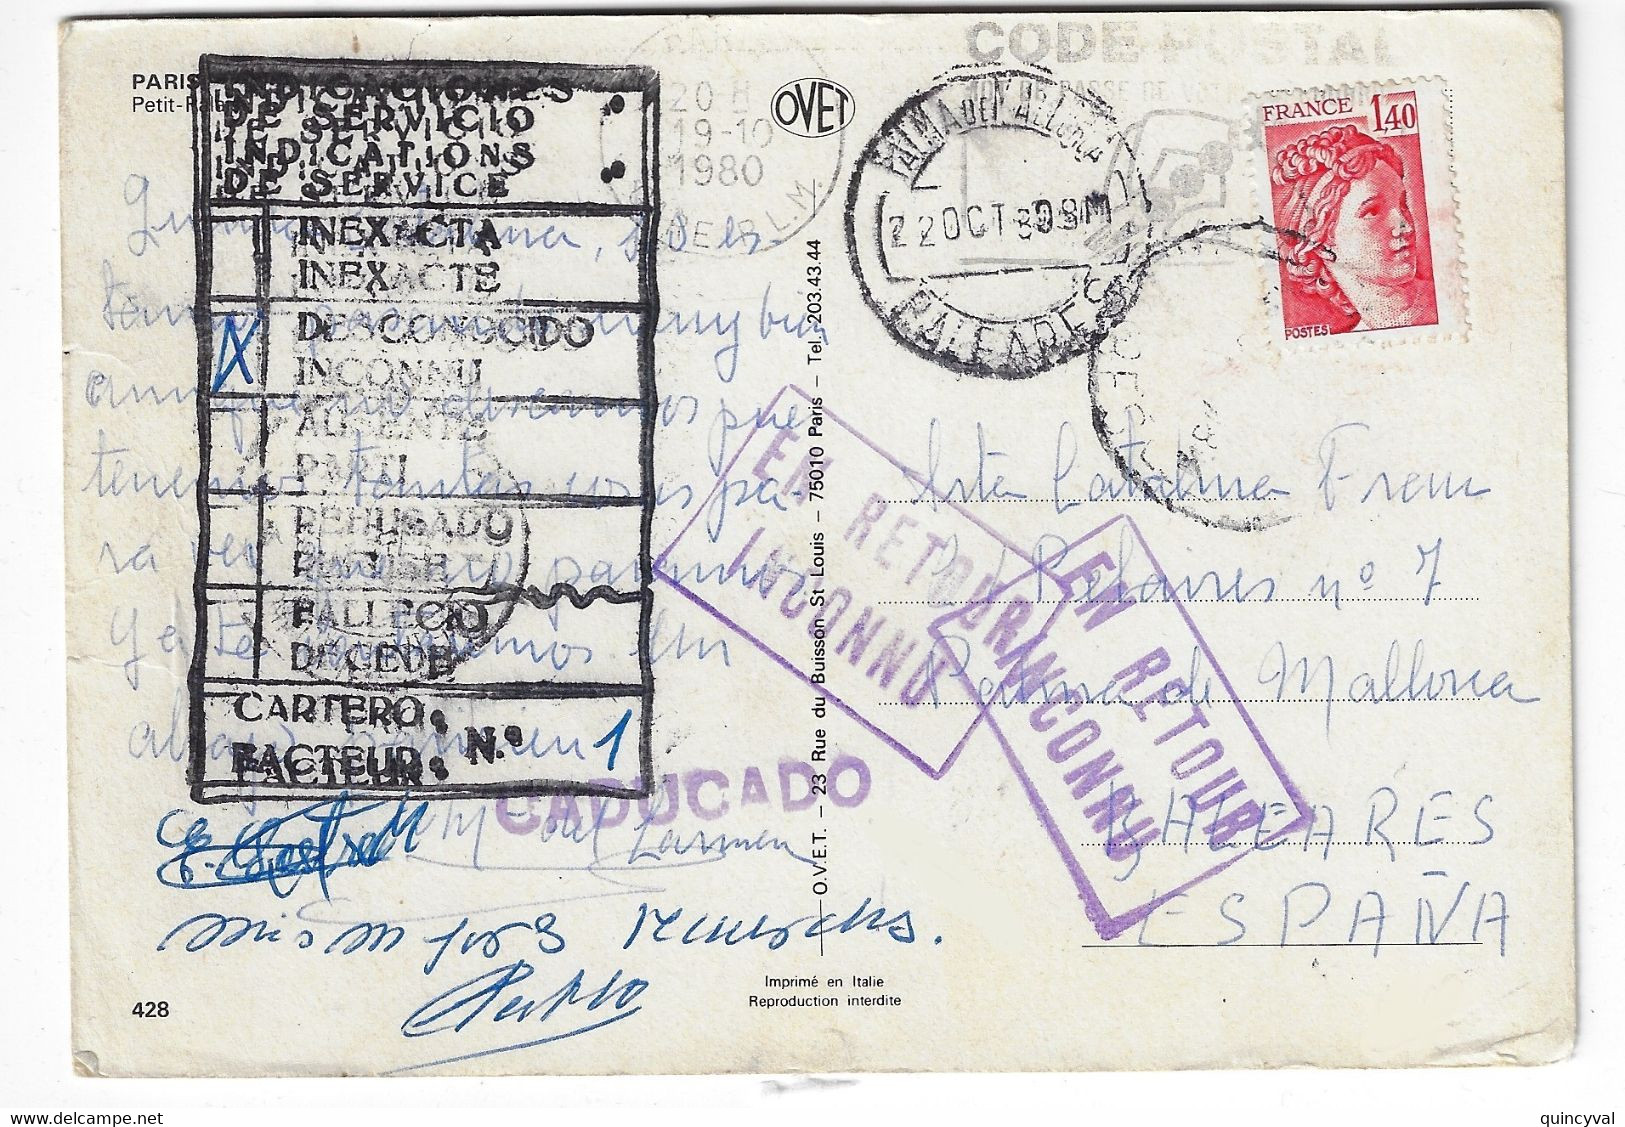 PARIS Carte Postale Dest Baléares Espagne Retour Envoyeur Inconnu Espagnol CADUCADO 1,40 F Sabine Yv 2102 Ob 1980 - 1977-1981 Sabine (Gandon)